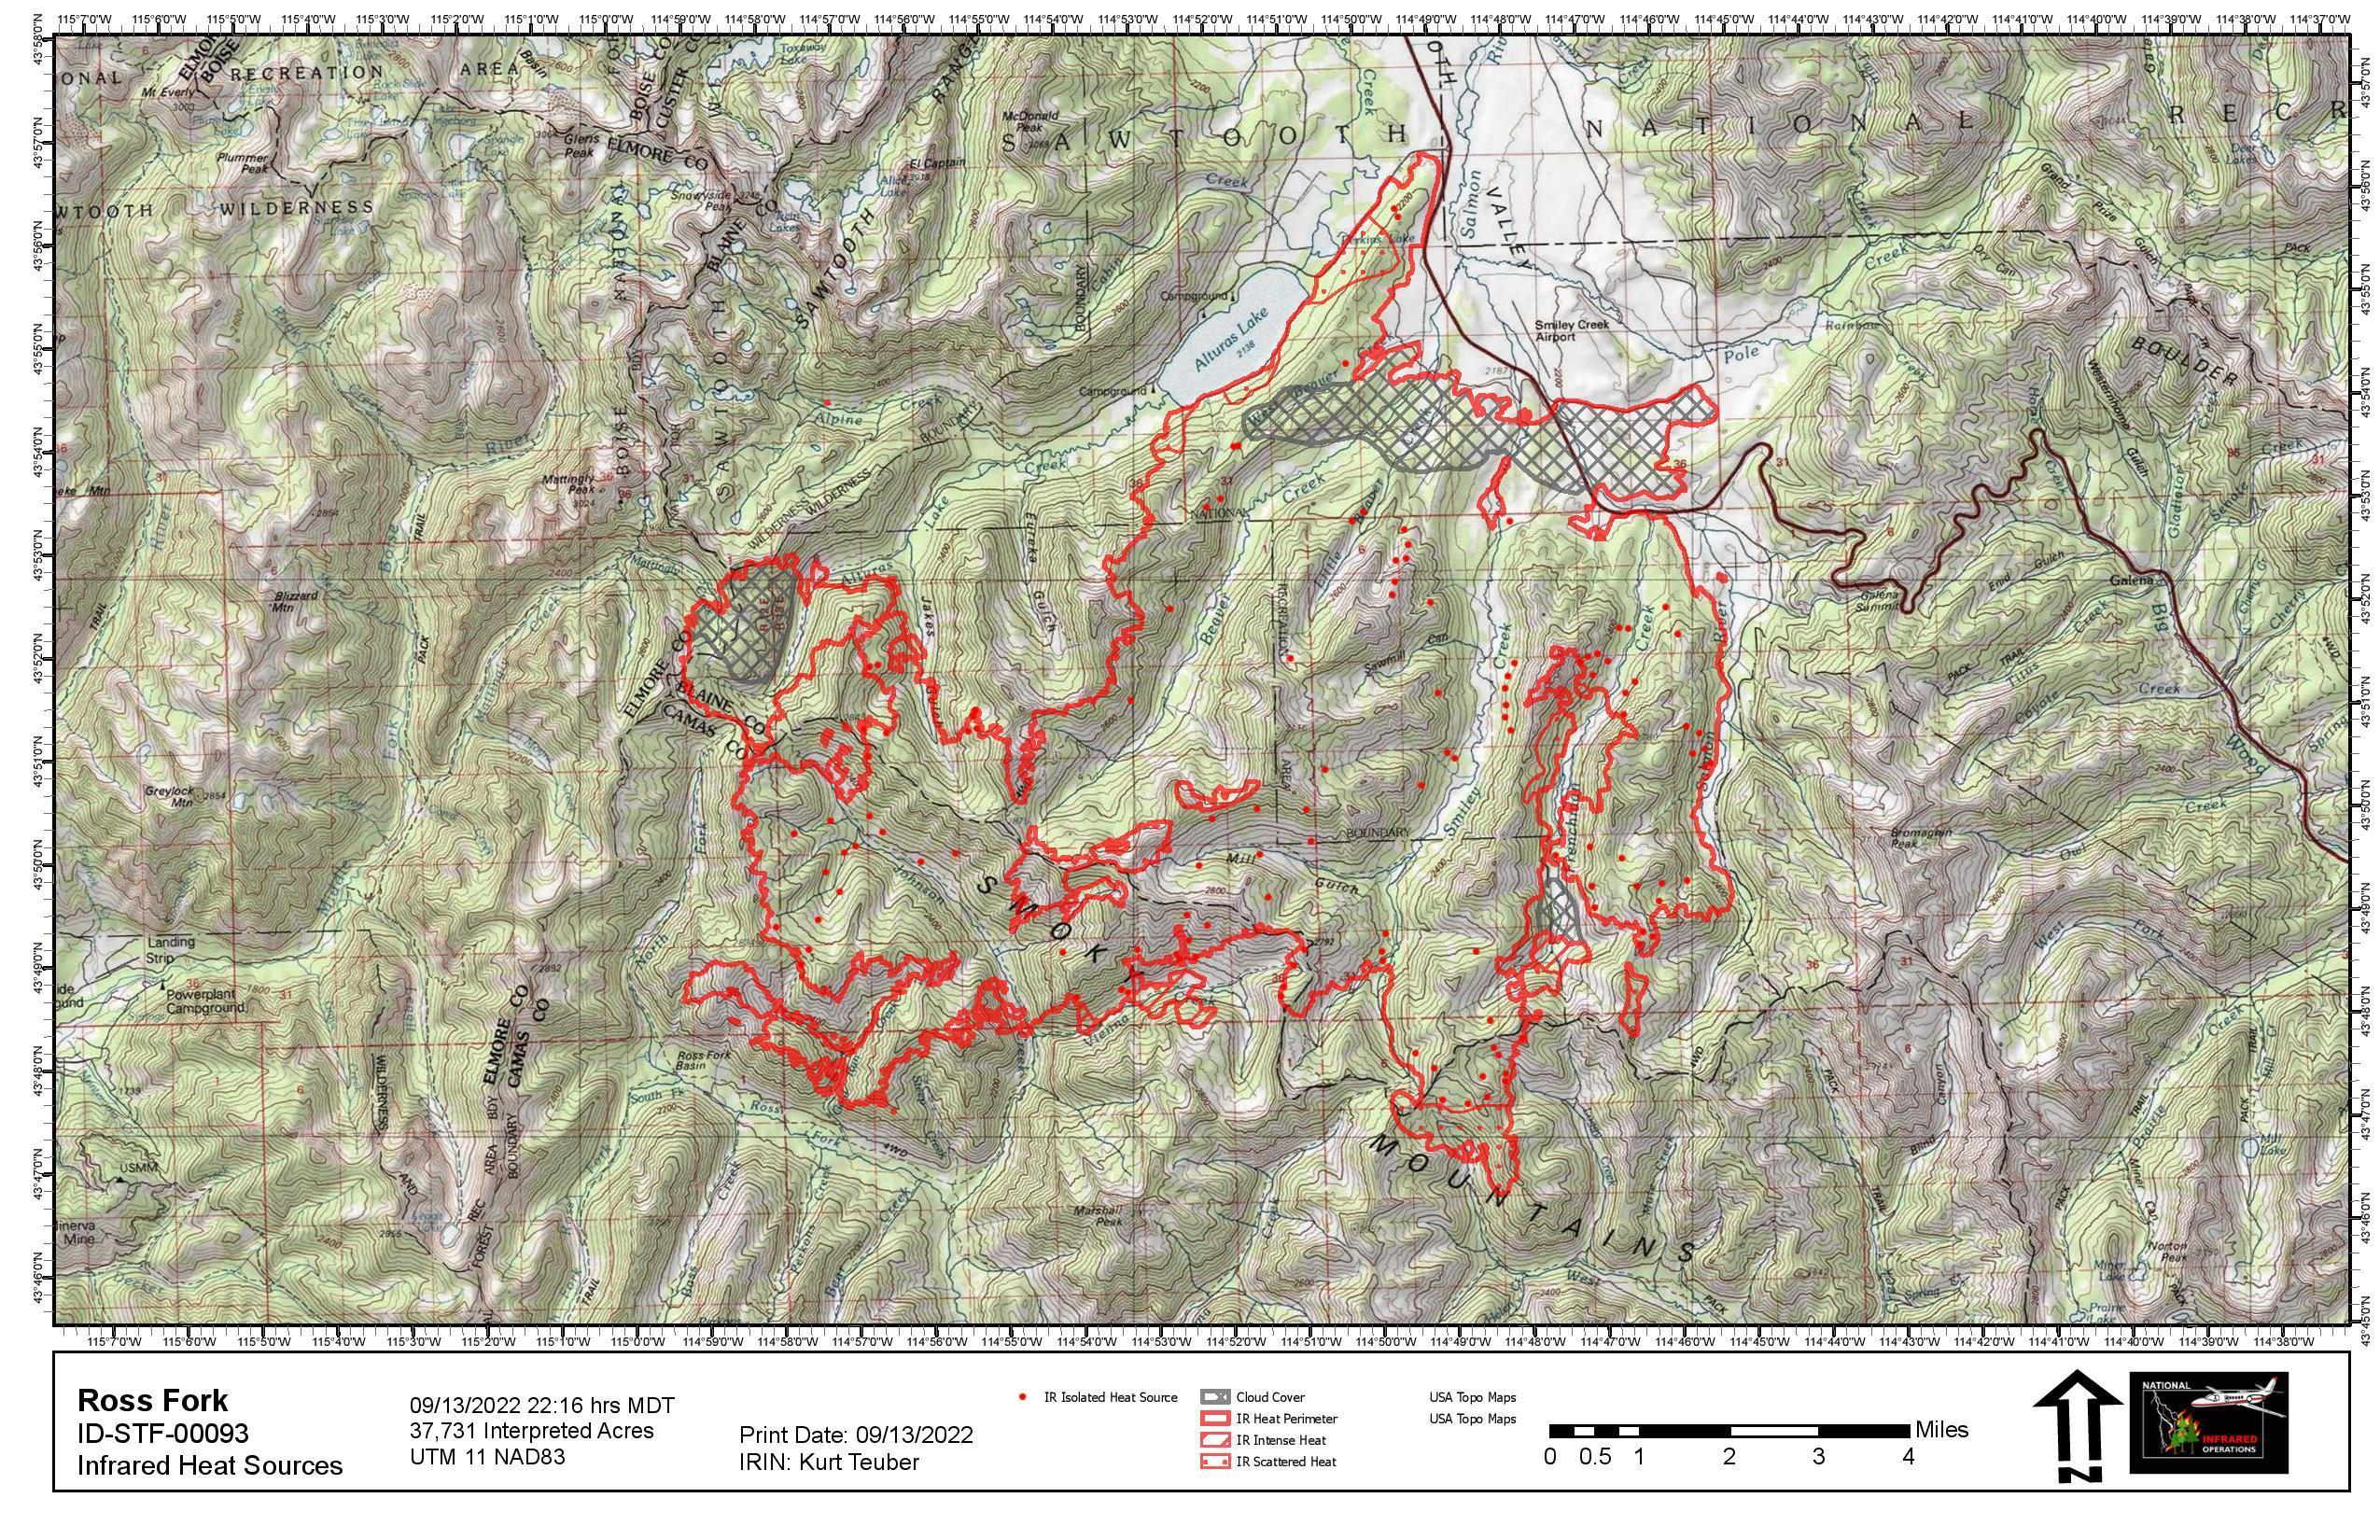 Ross Fork Fire perimeter map, Wednesday, Sept 14